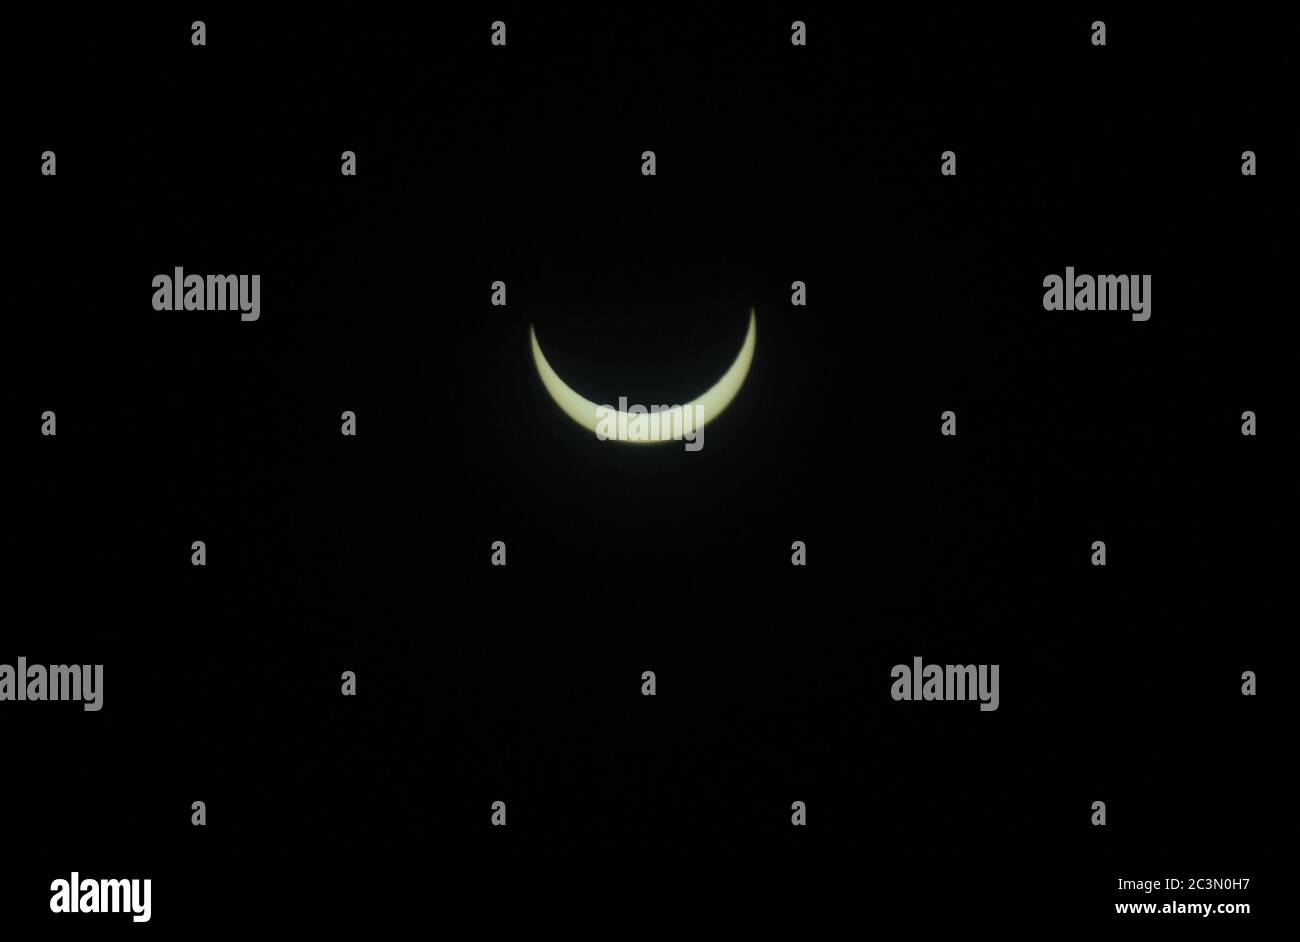 Beawar, Rajasthan, India, 21 de junio de 2020: Una vista del eclipse solar como se ve en el cielo desde Beawar. Un eclipse solar ocurre cuando la luna entra entre la tierra y el sol y cuando los tres cuerpos están alineados. El eclipse de hoy apareció en Arabia Saudita, Qatar, Emiratos Árabes Unidos, Omán, India, Sri Lanka, Malasia, Indonesia, Singapur, Islas Marianas del Norte y Guam. Crédito: Sumit Saraswat/Alamy Live News Foto de stock